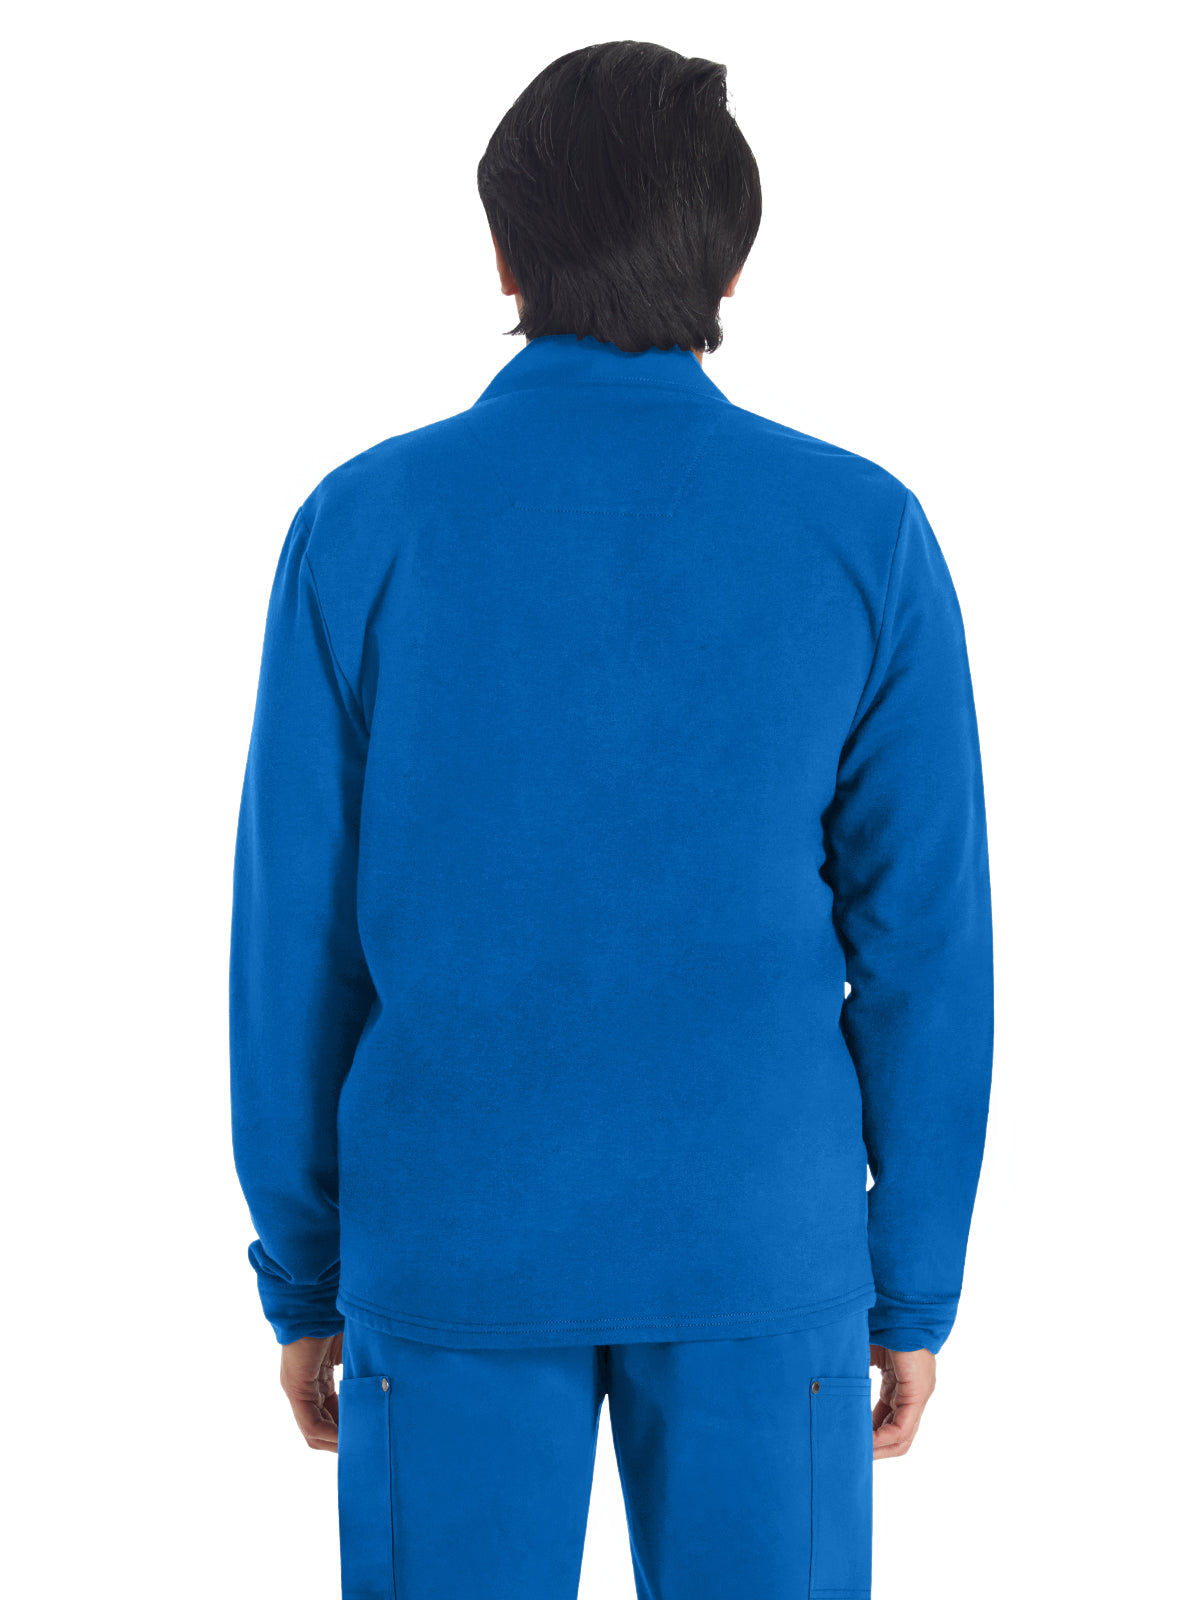 Men's 3-Pocket Zip Front Fleece Jacket - DK318 - Royal